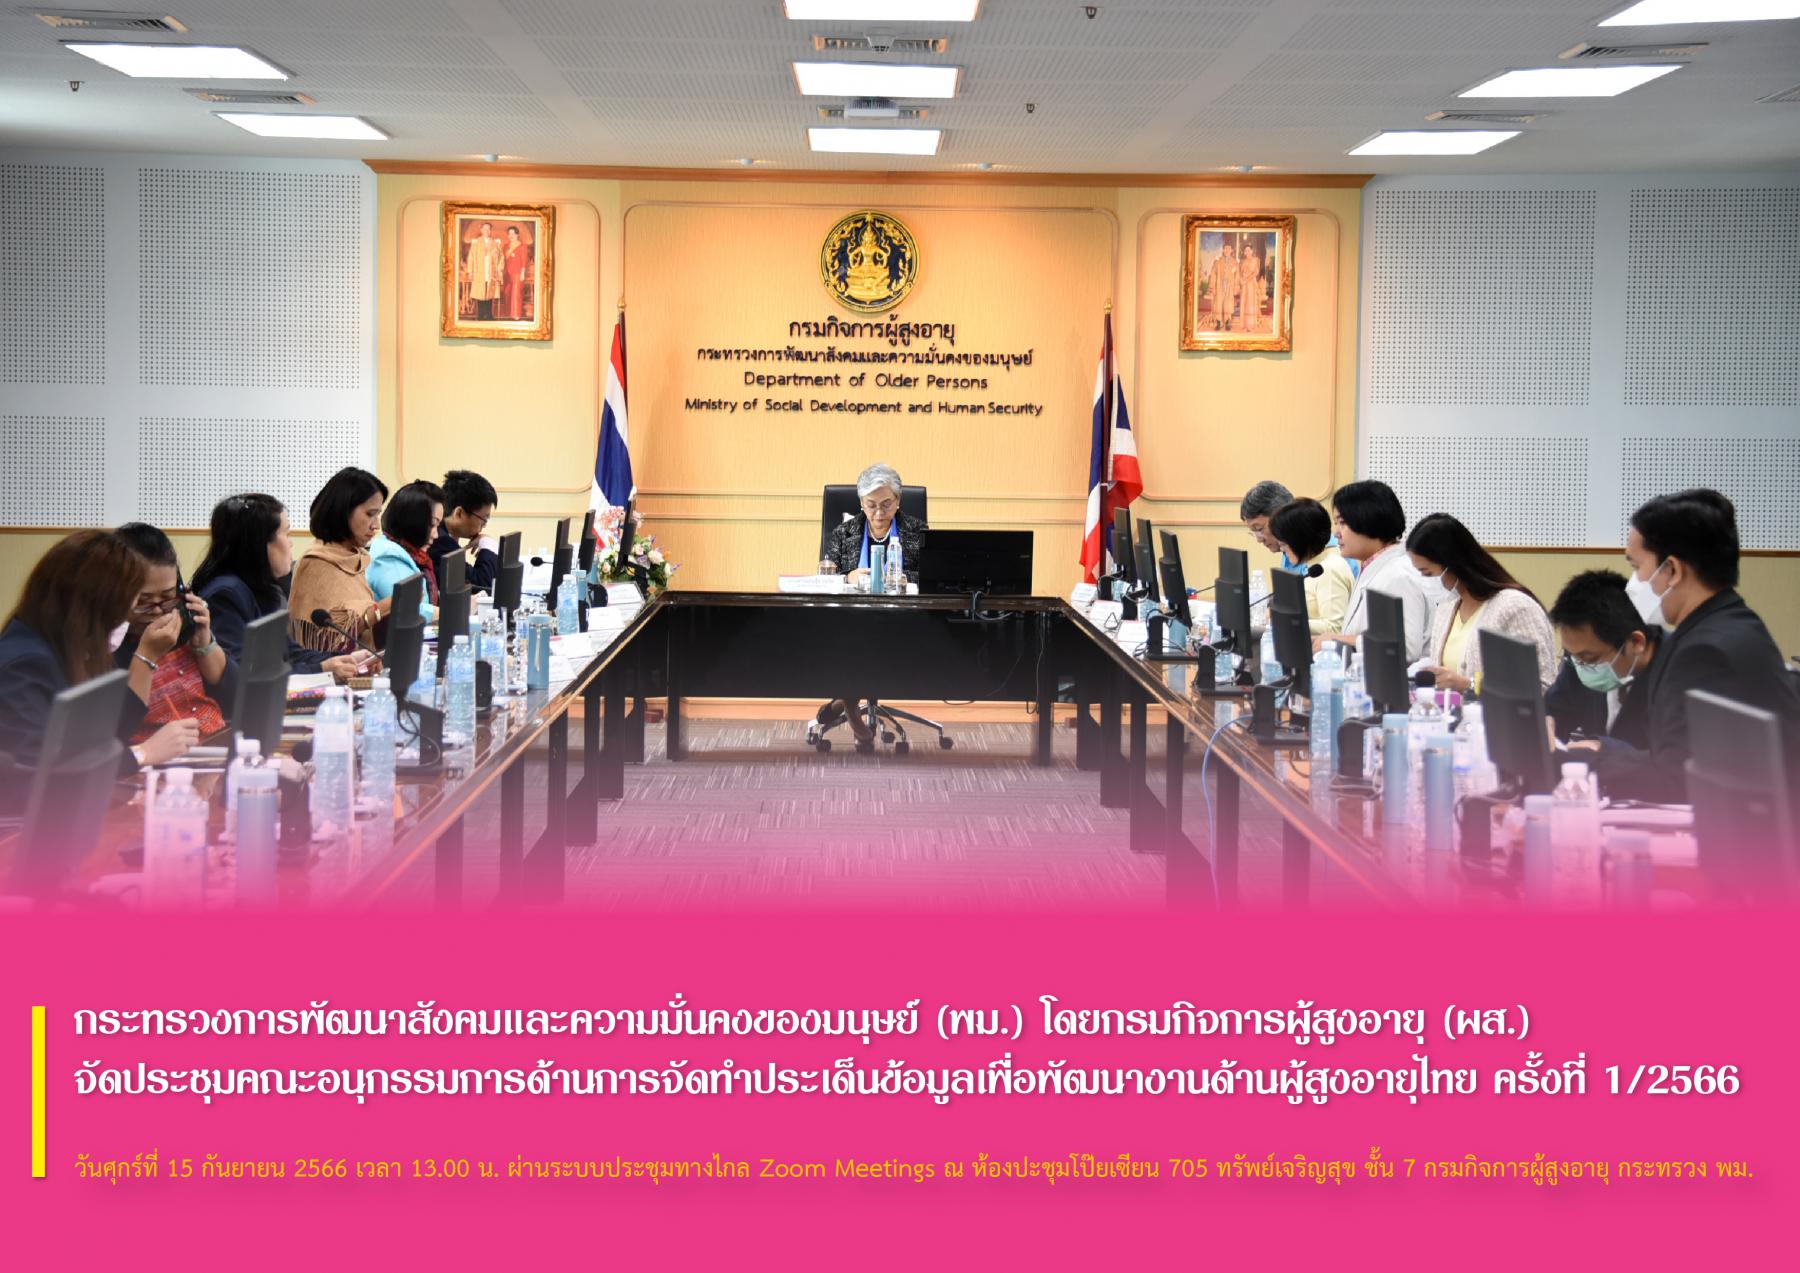 กระทรวงการพัฒนาสังคมและความมั่นคงของมนุษย์ (พม.) โดยกรมกิจการผู้สูงอายุ (ผส.) จัดประชุมคณะอนุกรรมการด้านการจัดทำประเด็นข้อมูลเพื่อพัฒนางานด้านผู้สูงอายุไทย ครั้งที่ 1/2566